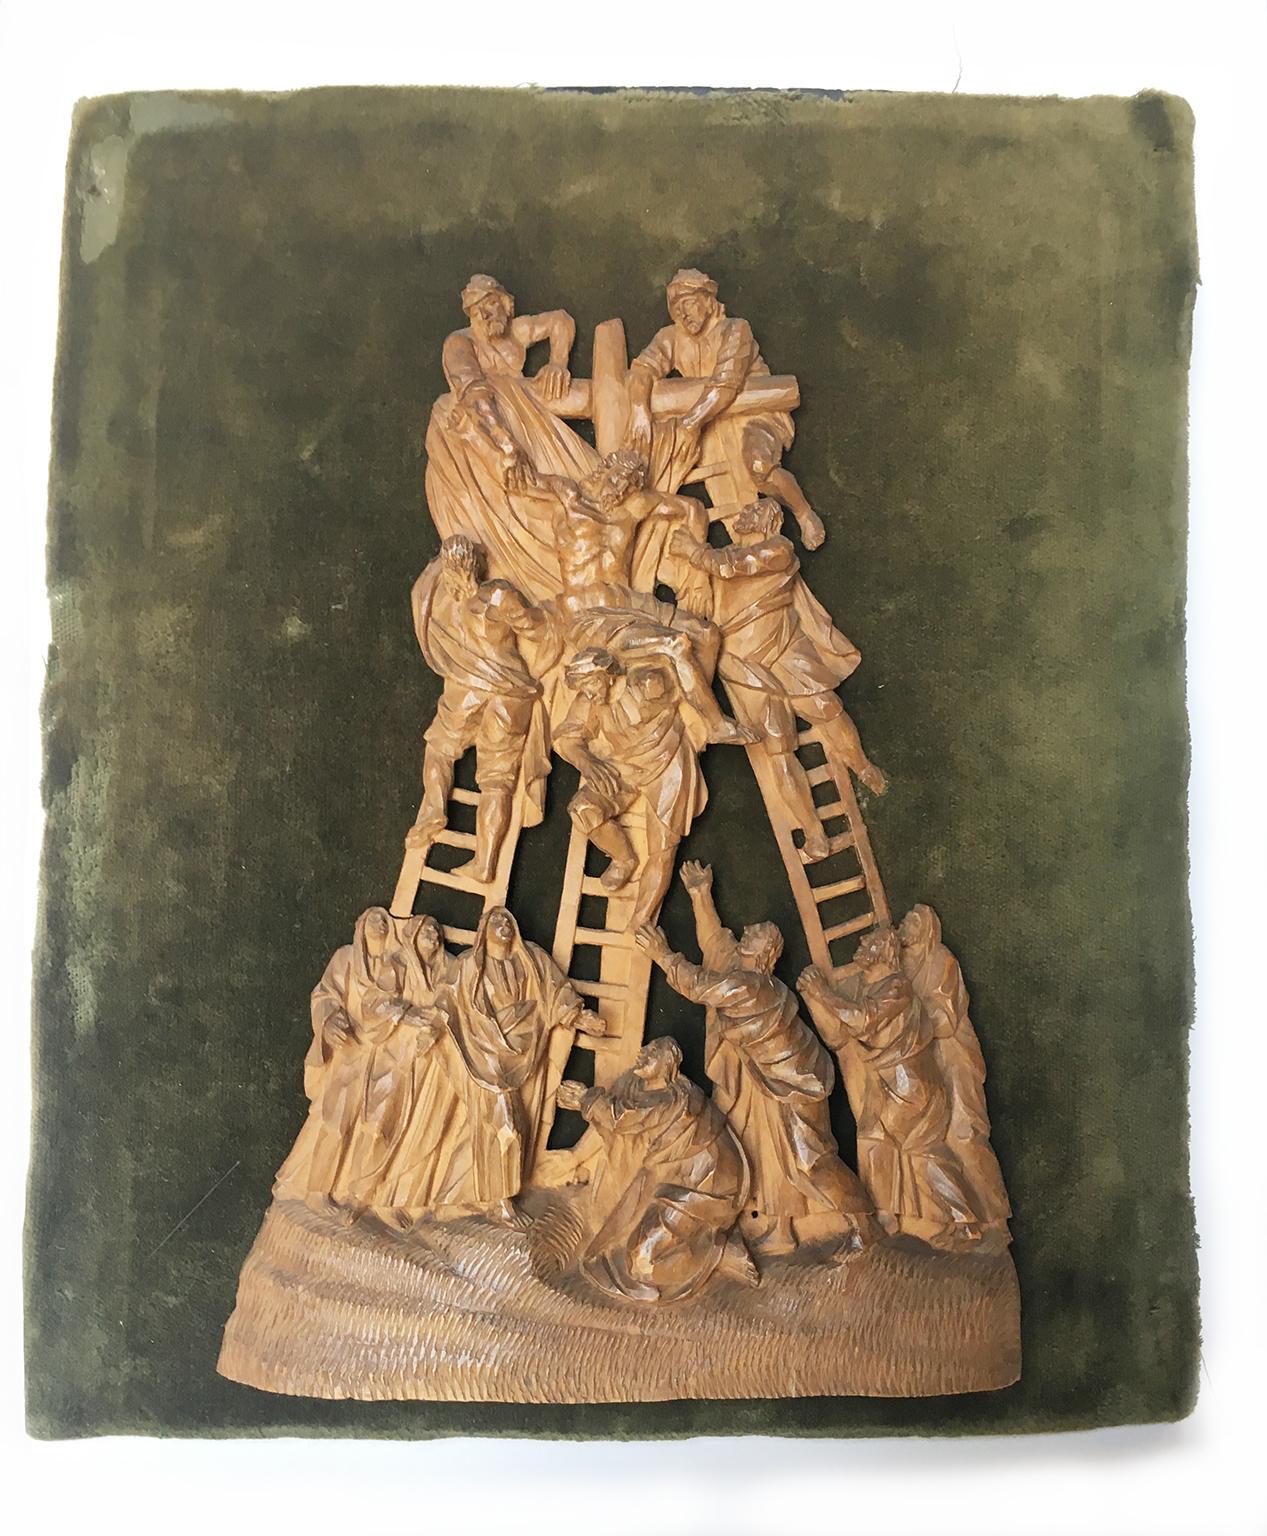 Micro sculpture sur buis
Dépôt
Europe centrale, première moitié du XVIIIe siècle
Il mesure : la sculpture 7,40 x 5,31 x 0,6 in (18,8 x 13,5 x 1,6 cm) ; avec la tablette 9,37 x 8,7 x 1,33 in (23,8 x 20,5 x 3,4 cm)) ; 0,70 lb (320 g).
État de